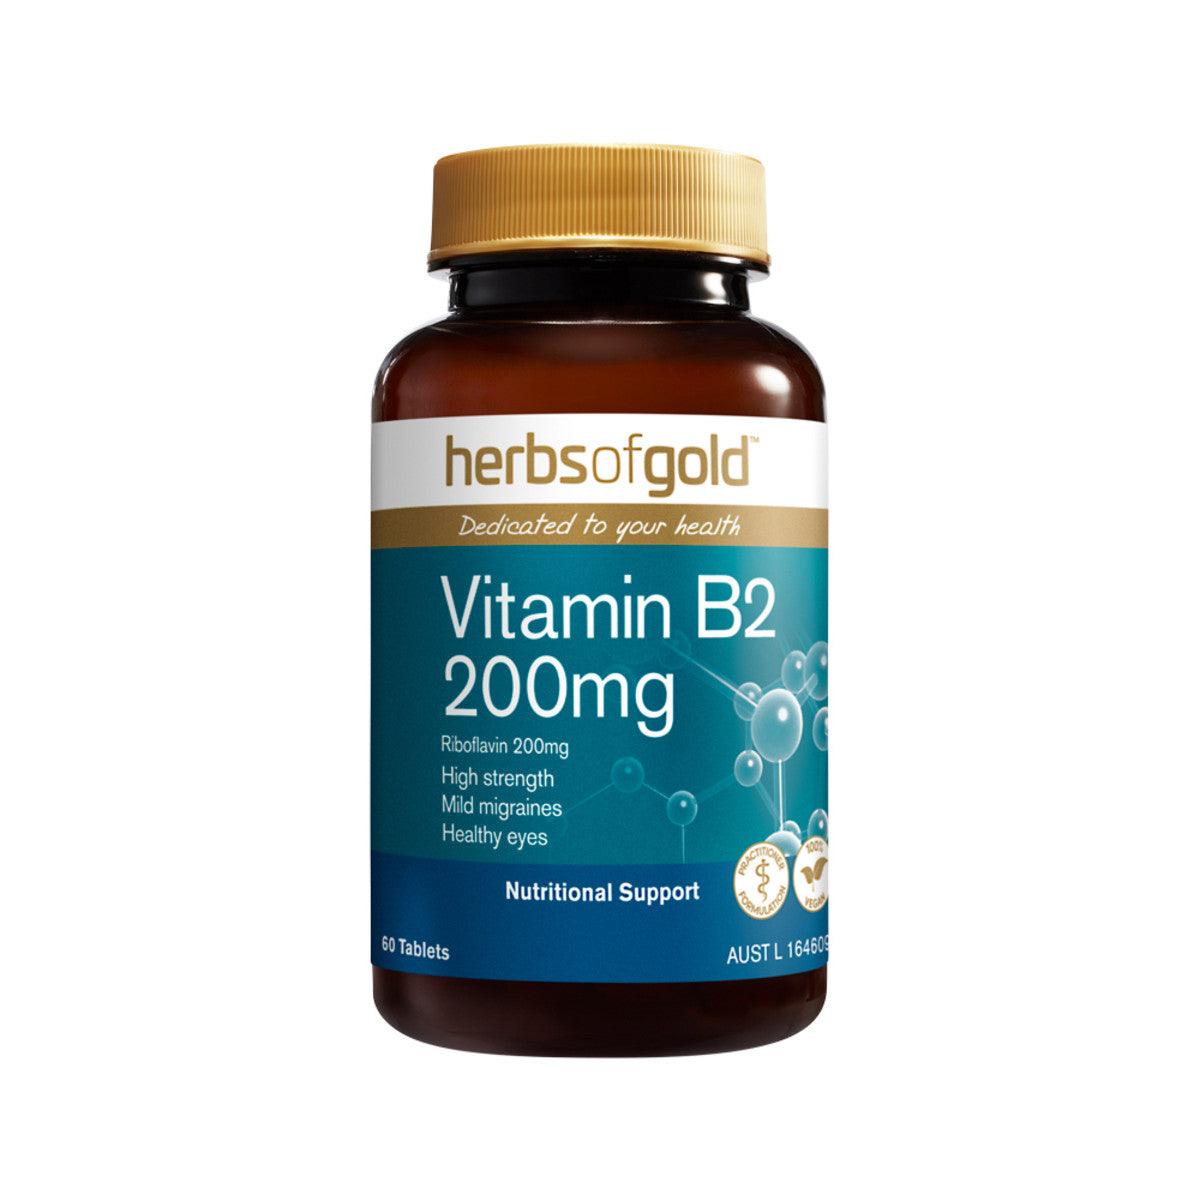 Herbs of Gold Vitamin B2 200mg 60 Tablets - QVM Vitamins™